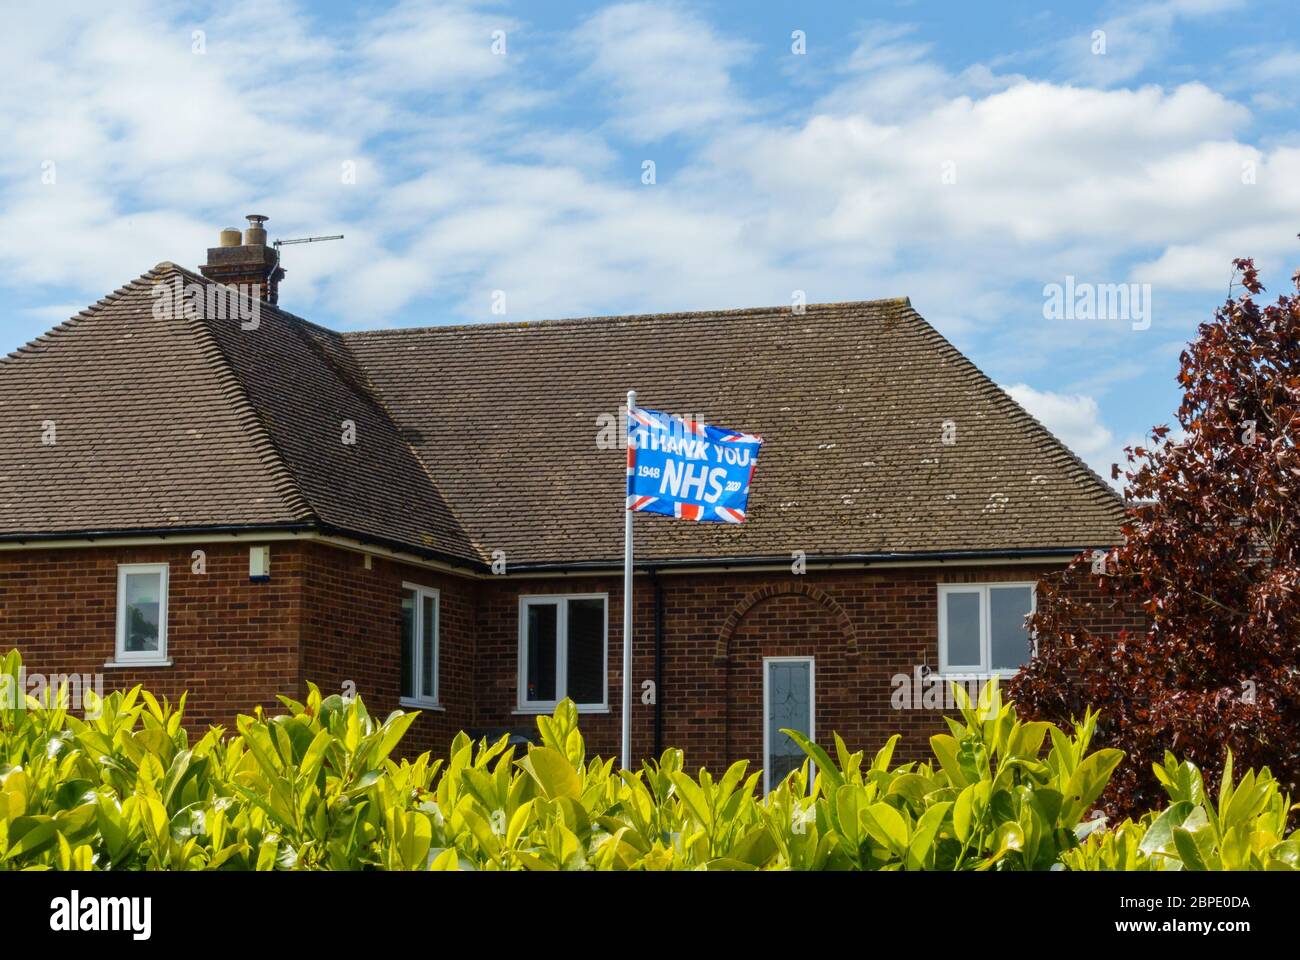 "Grazie NHS" bandiera dell'unione che sventolava sull'asta di fronte a casa per ringraziare NHS durante la pandemia di Coronavirus, maggio 2020, Inghilterra, Regno Unito Foto Stock